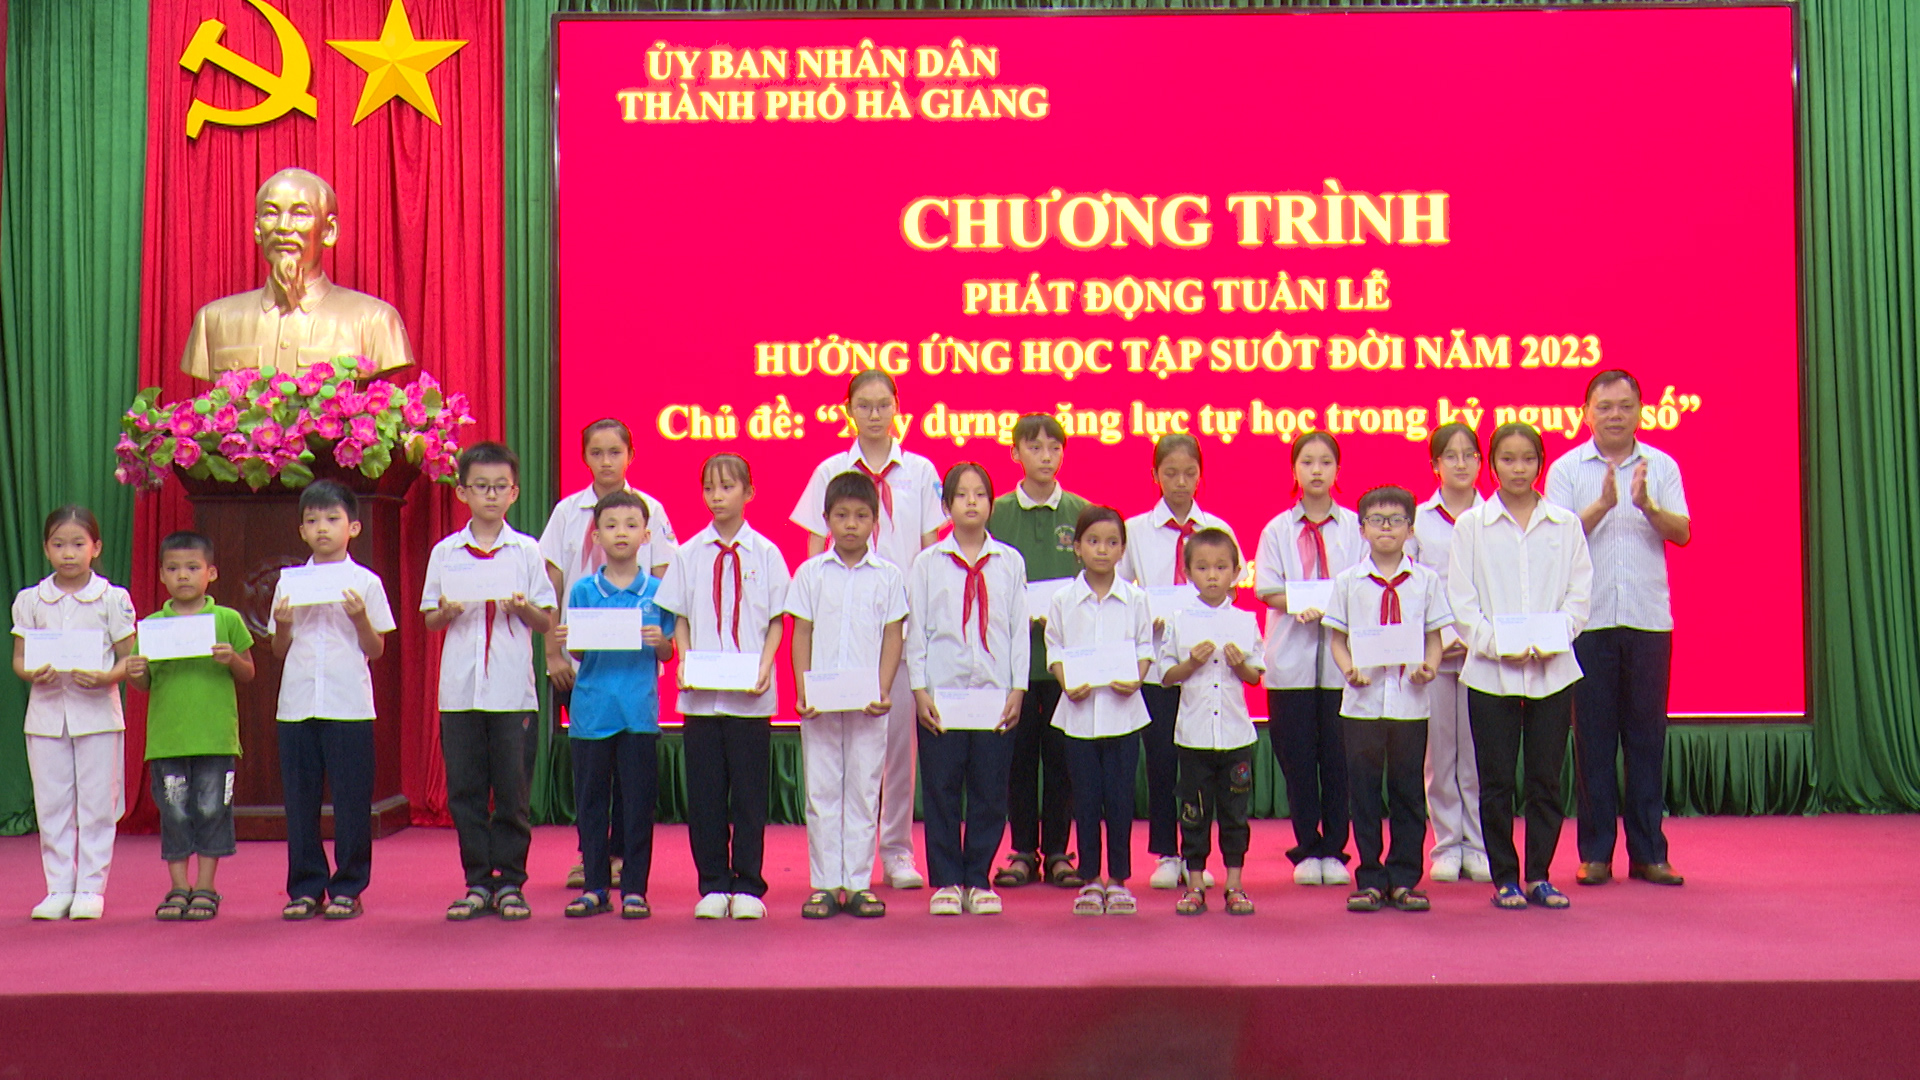 Thành phố Hà Giang phát động tuần lễ hưởng ứng học tập suốt đời năm 2023